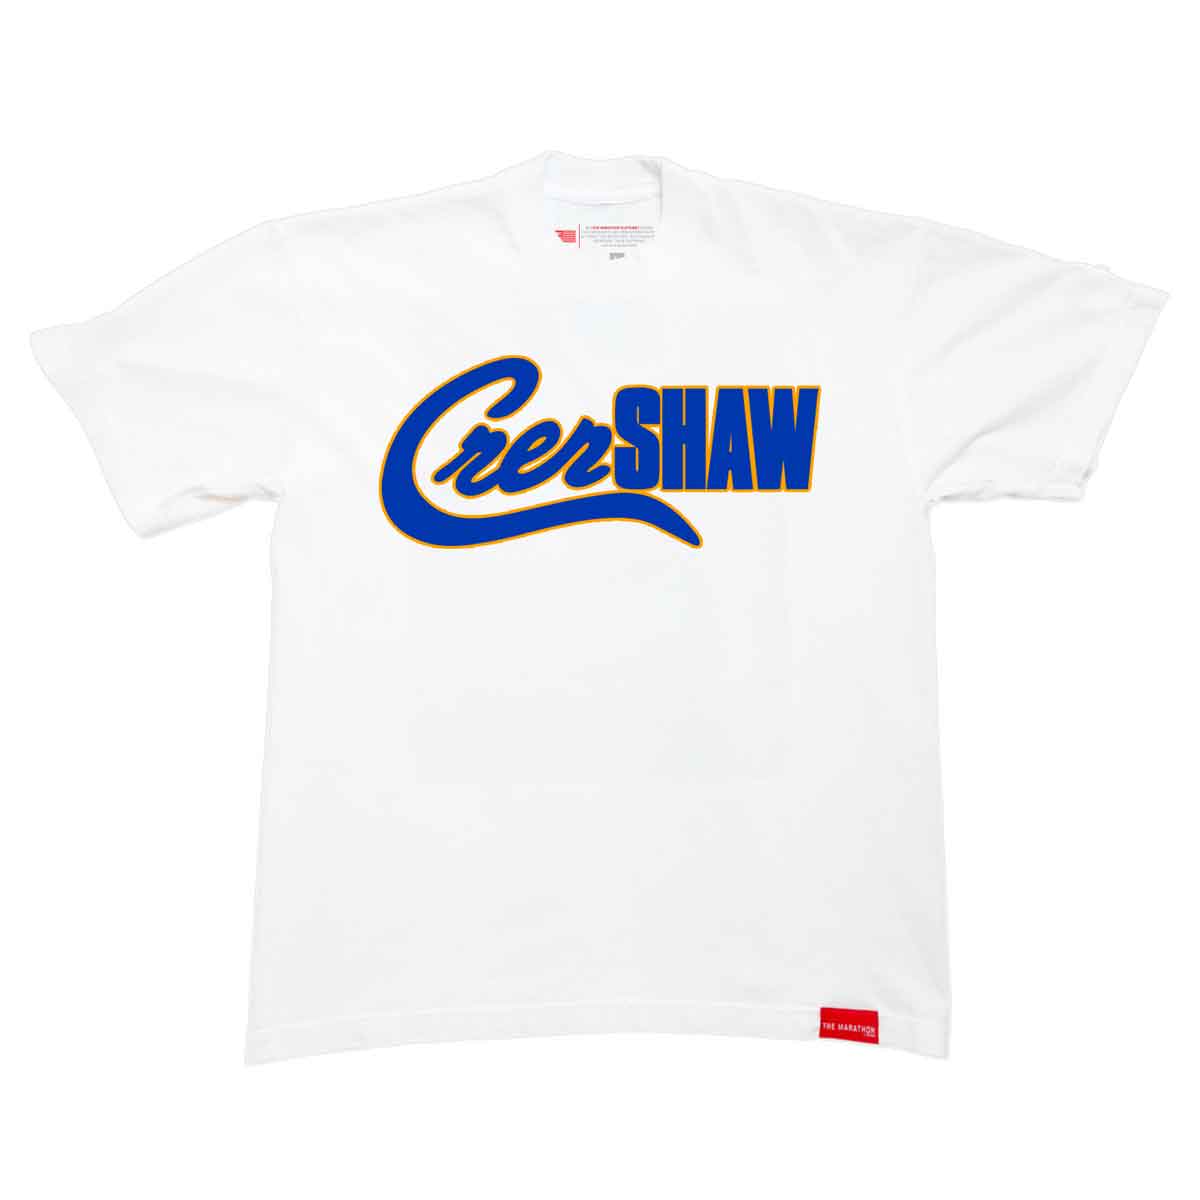 Crenshaw Mashup T-shirt - White/Royal/Gold